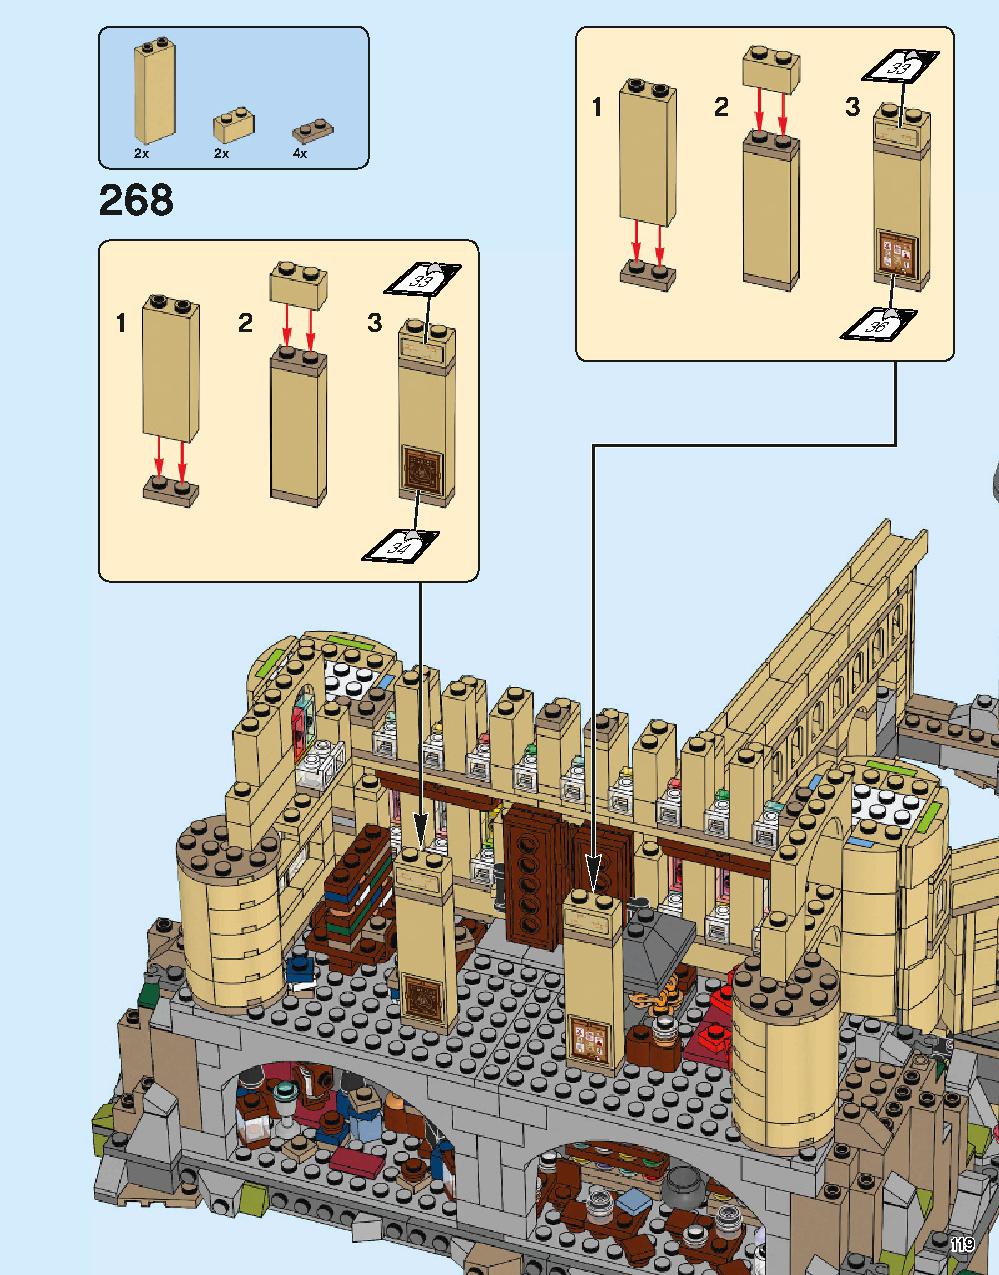 ホグワーツ城 71043 レゴの商品情報 レゴの説明書・組立方法 119 page